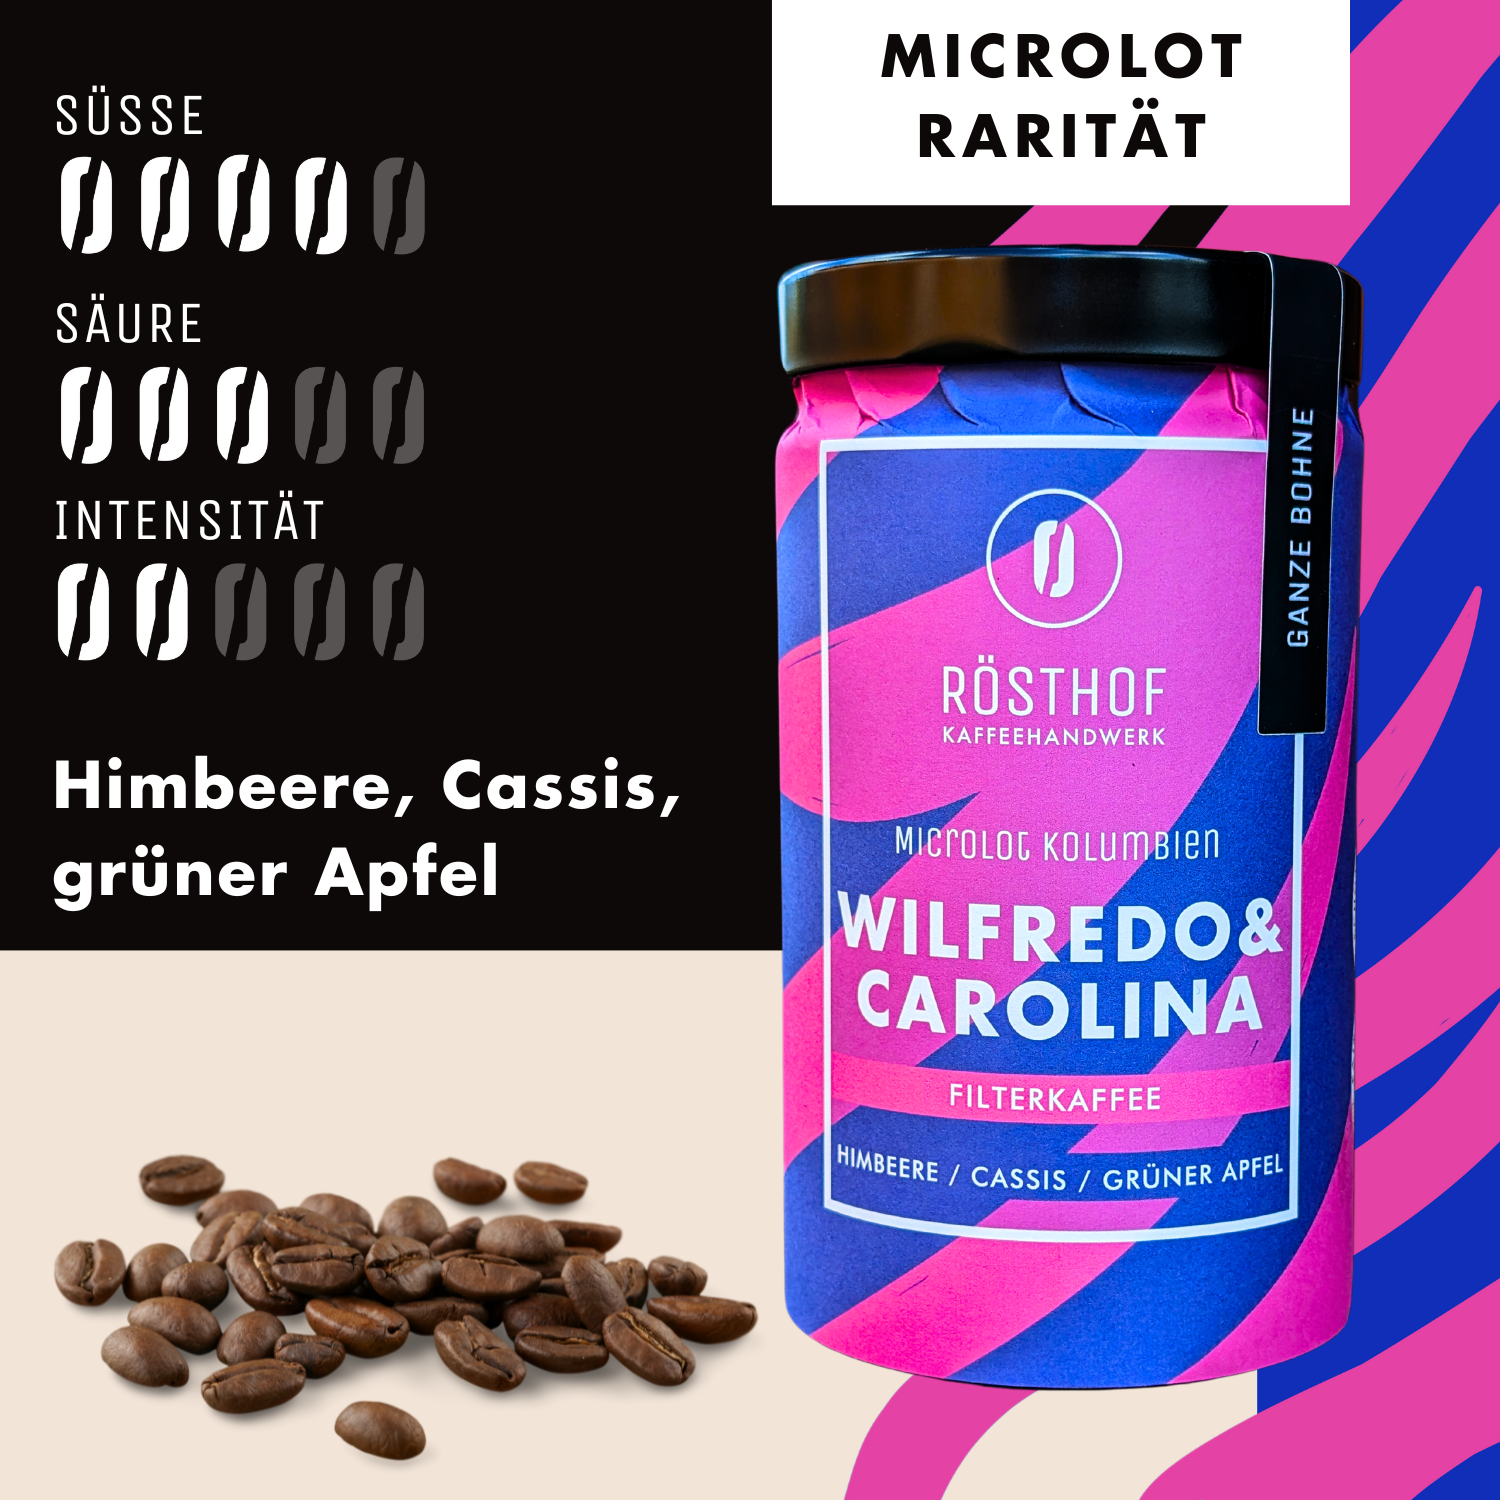 Filterkaffee Wilfredo & Carolina - Microlot / Rarität